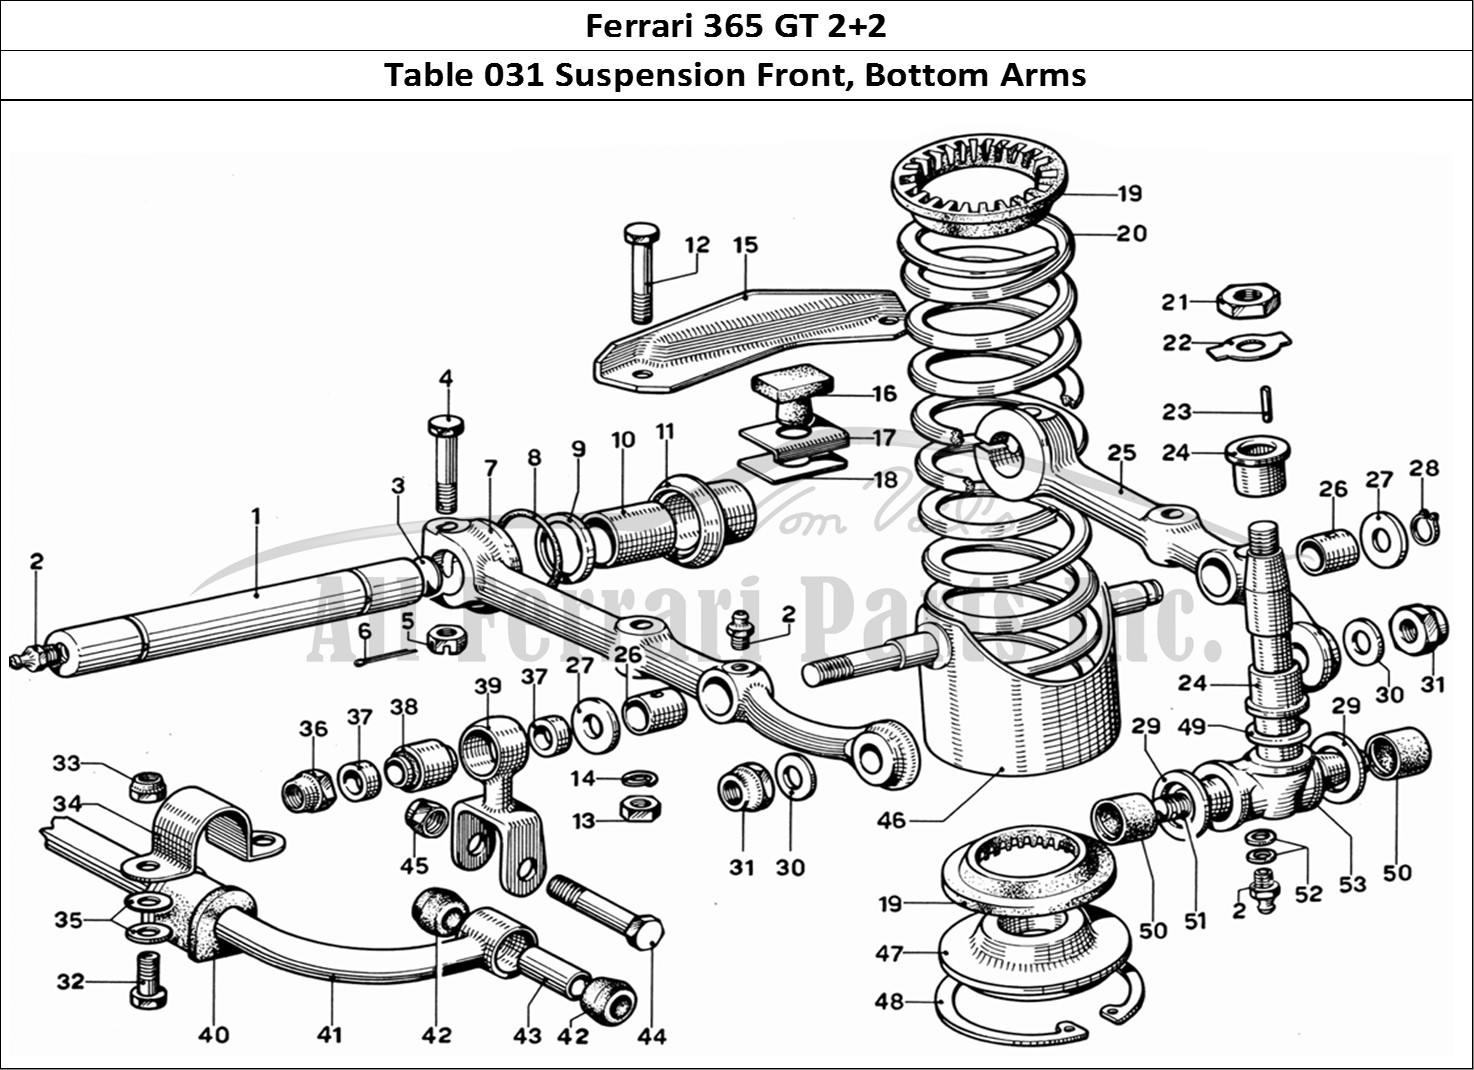 Ferrari Parts Ferrari 365 GT 2+2 (Mechanical) Page 031 Front Wheel Suspension -